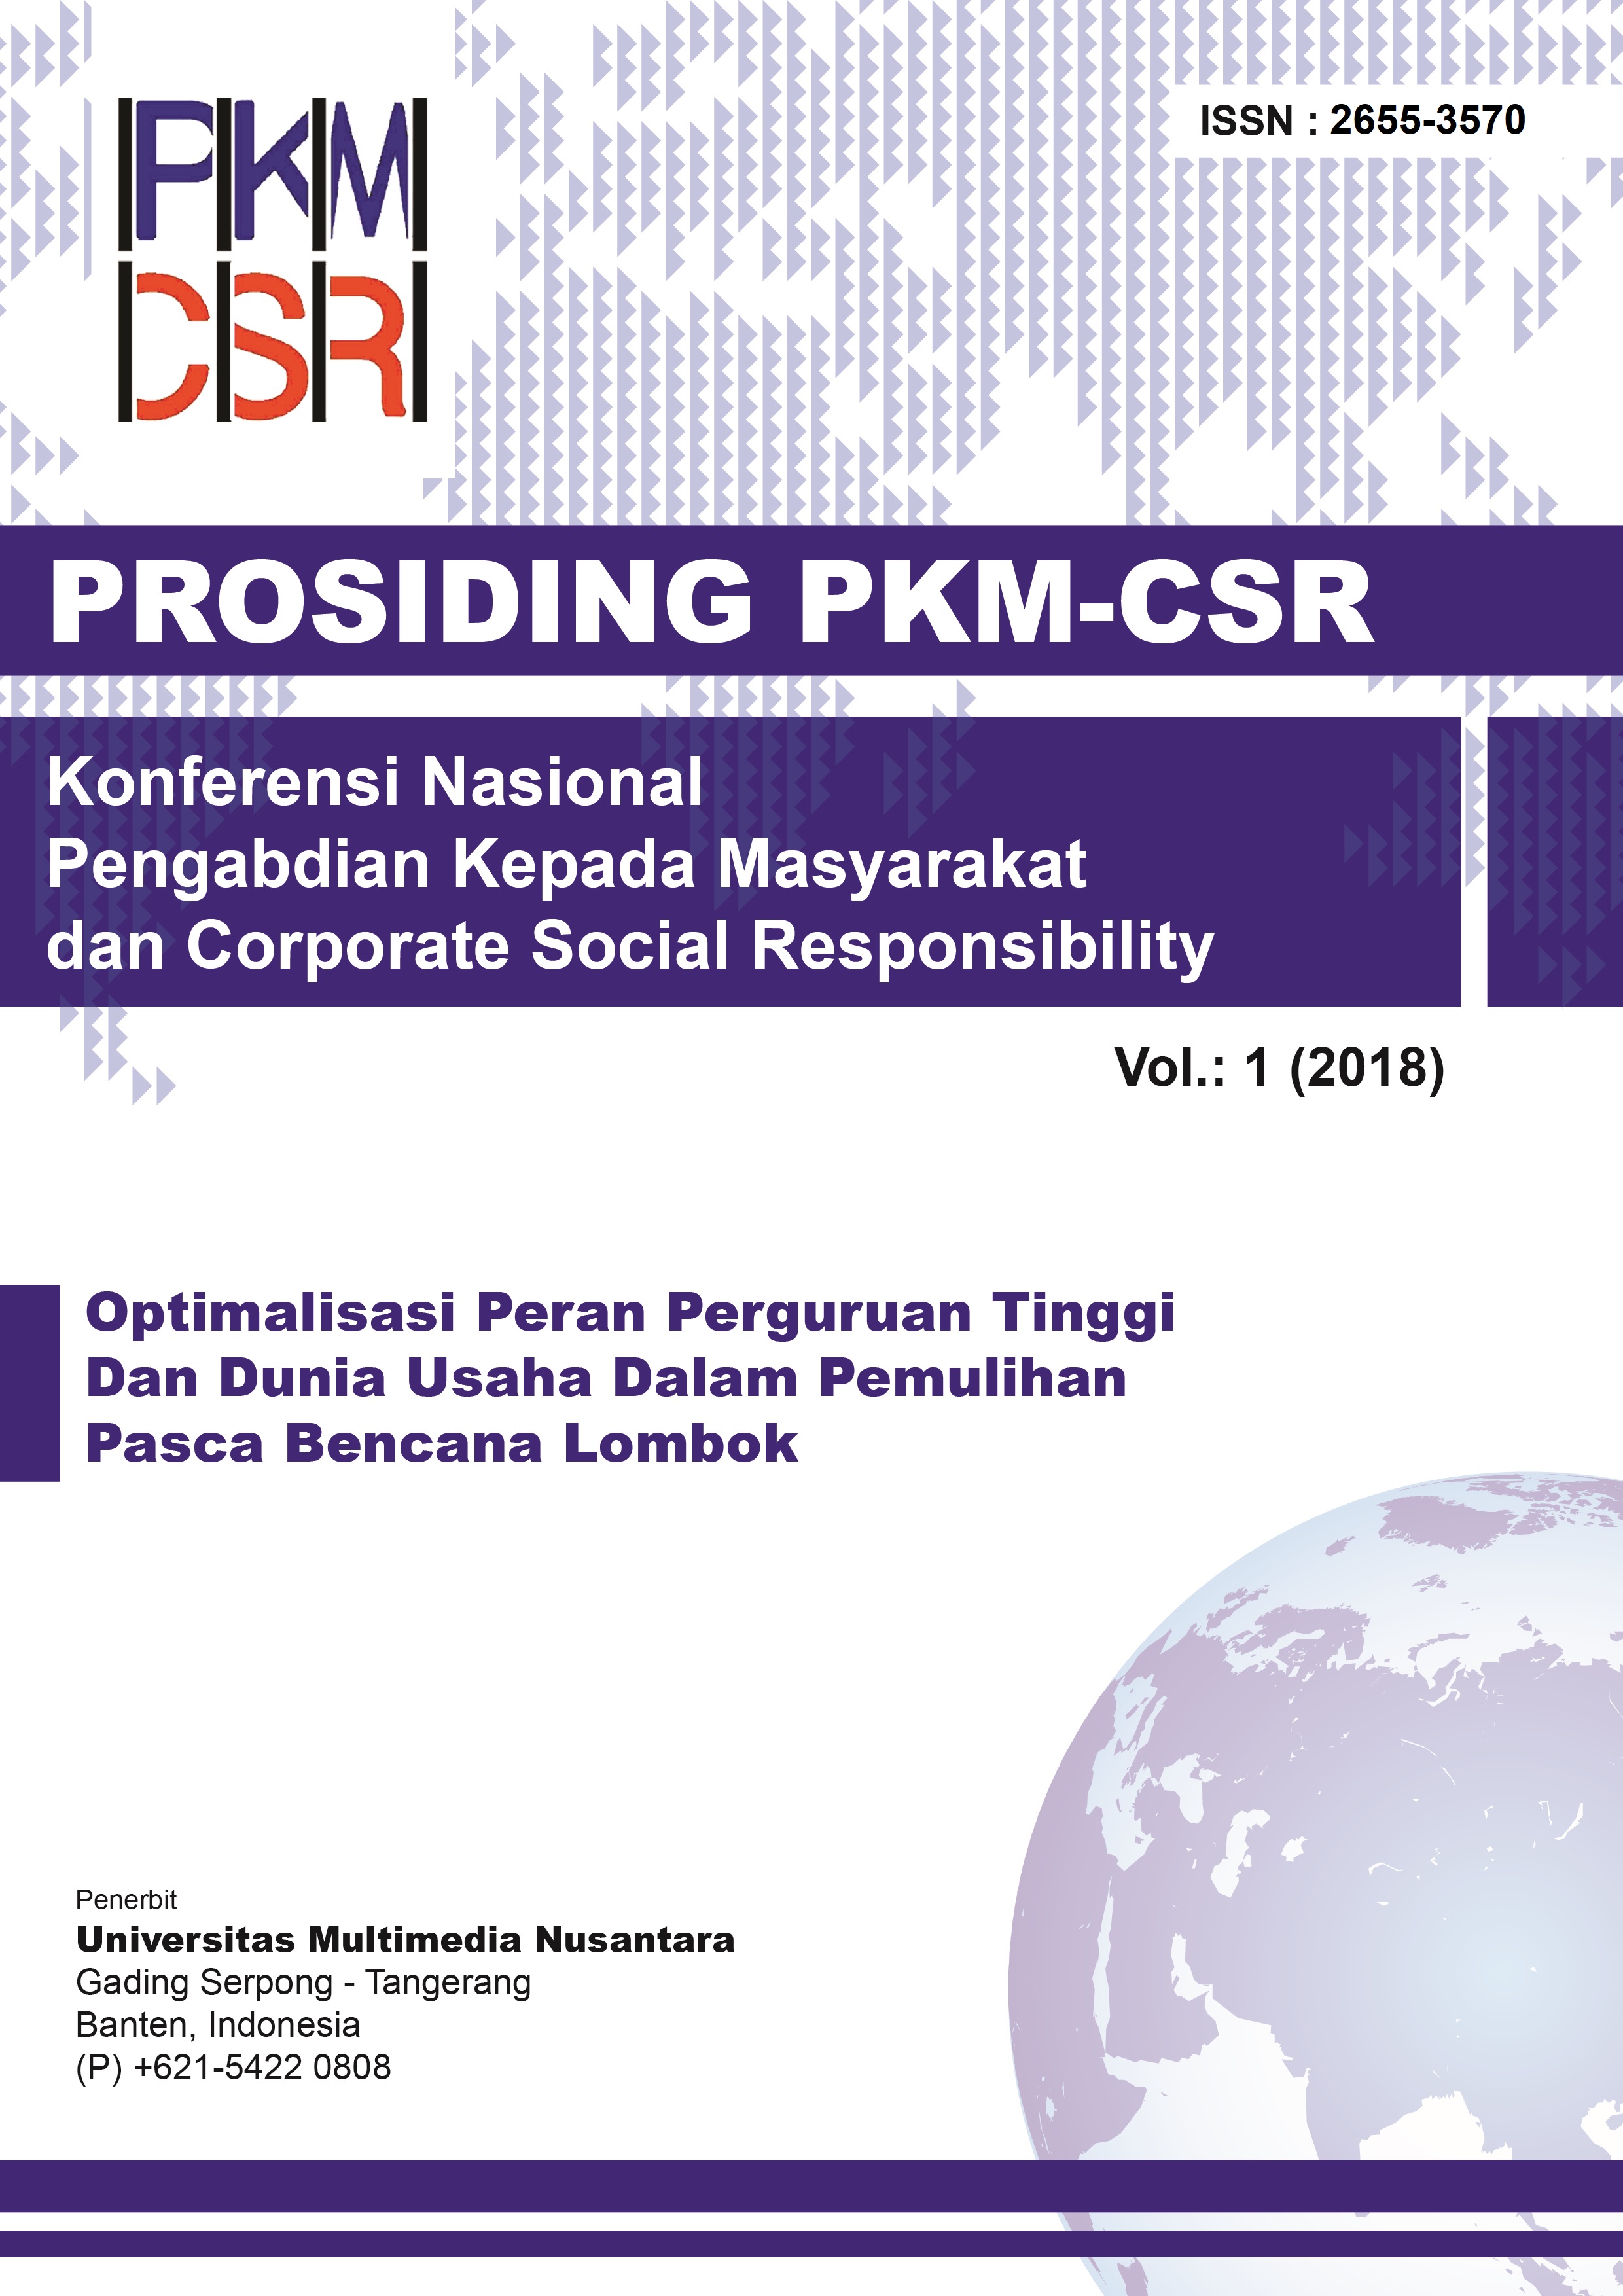 Prosiding Konferensi Nasional Pengabdian kepada Masyarakat dan Corporate Social Responsibilty (PKM-CSR)